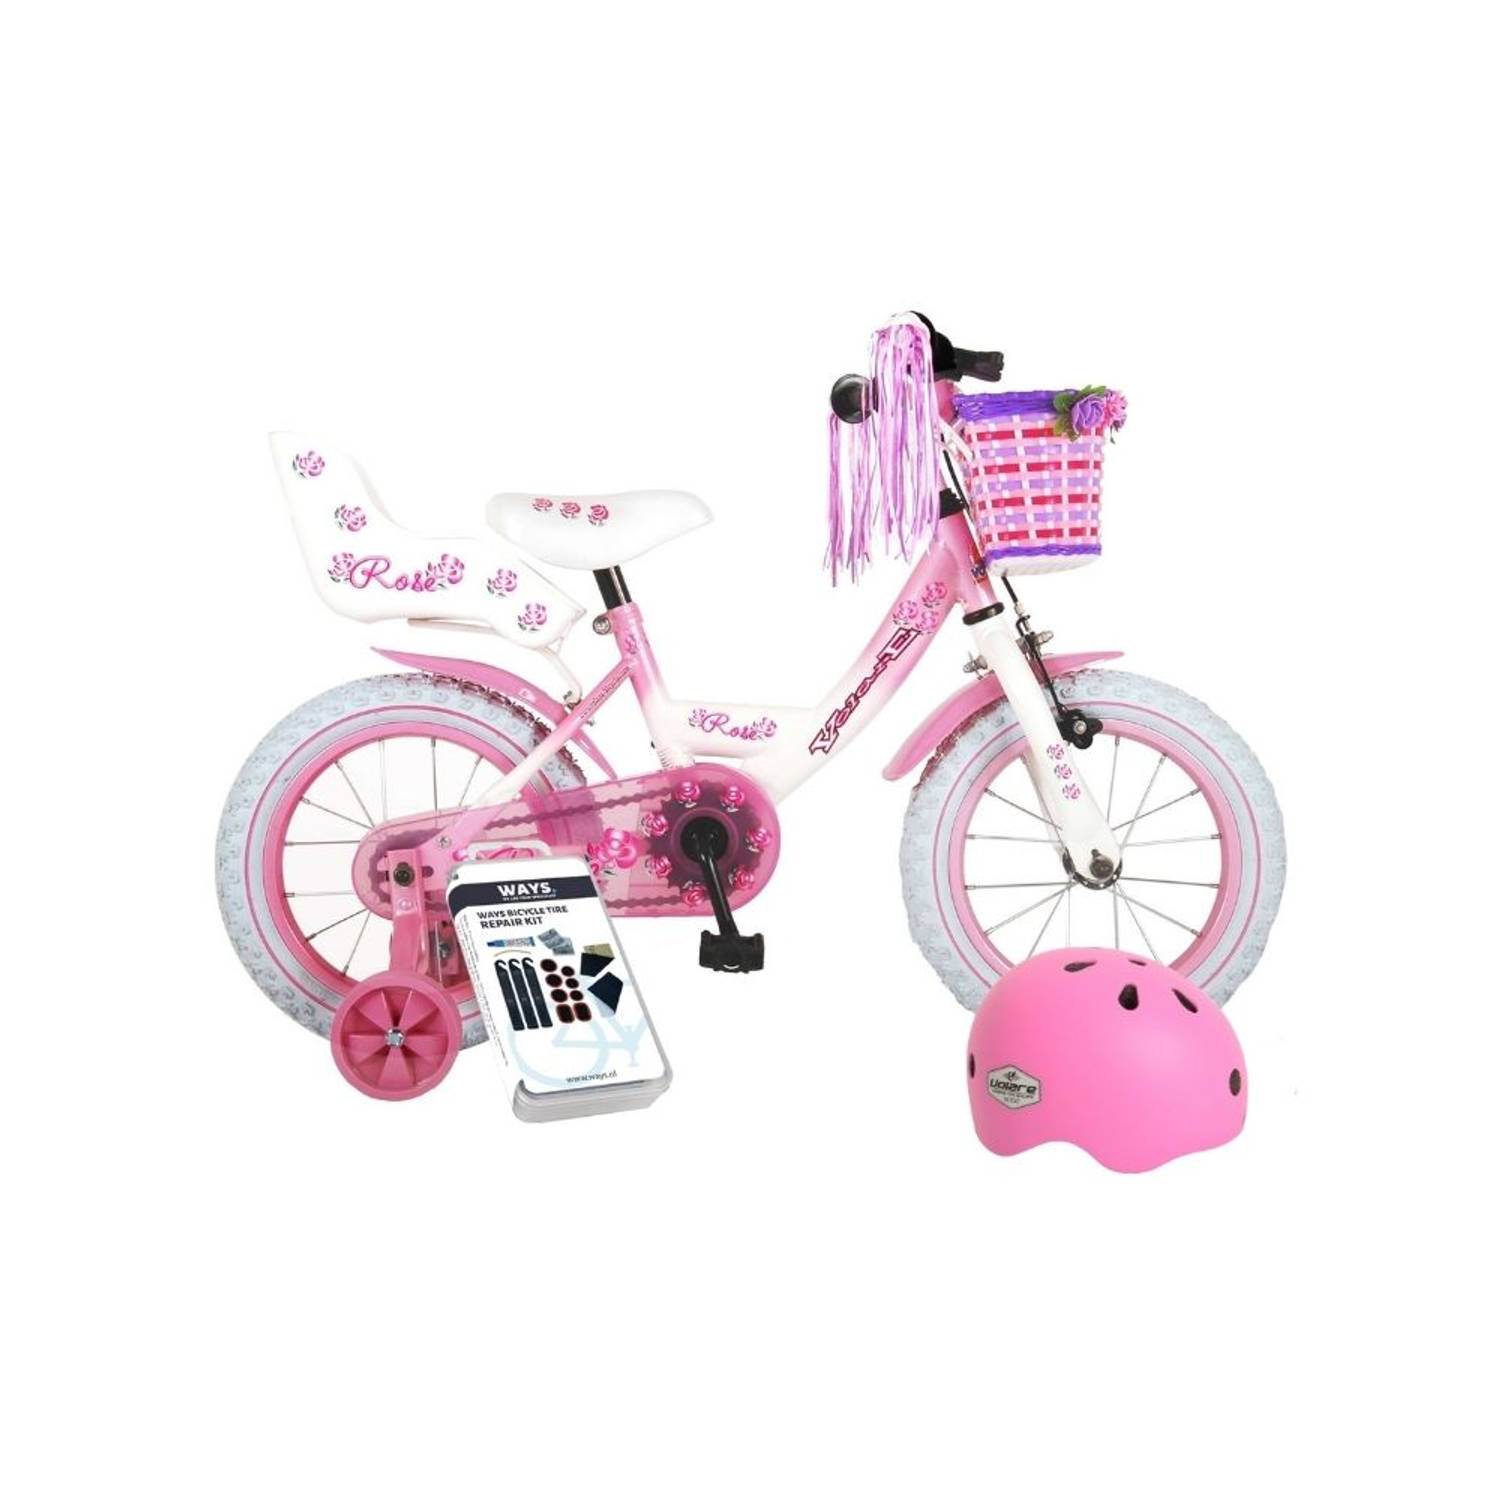 Volare Kinderfiets Rose - 14 inch - Roze/Wit - Met fietshelm en accessoires